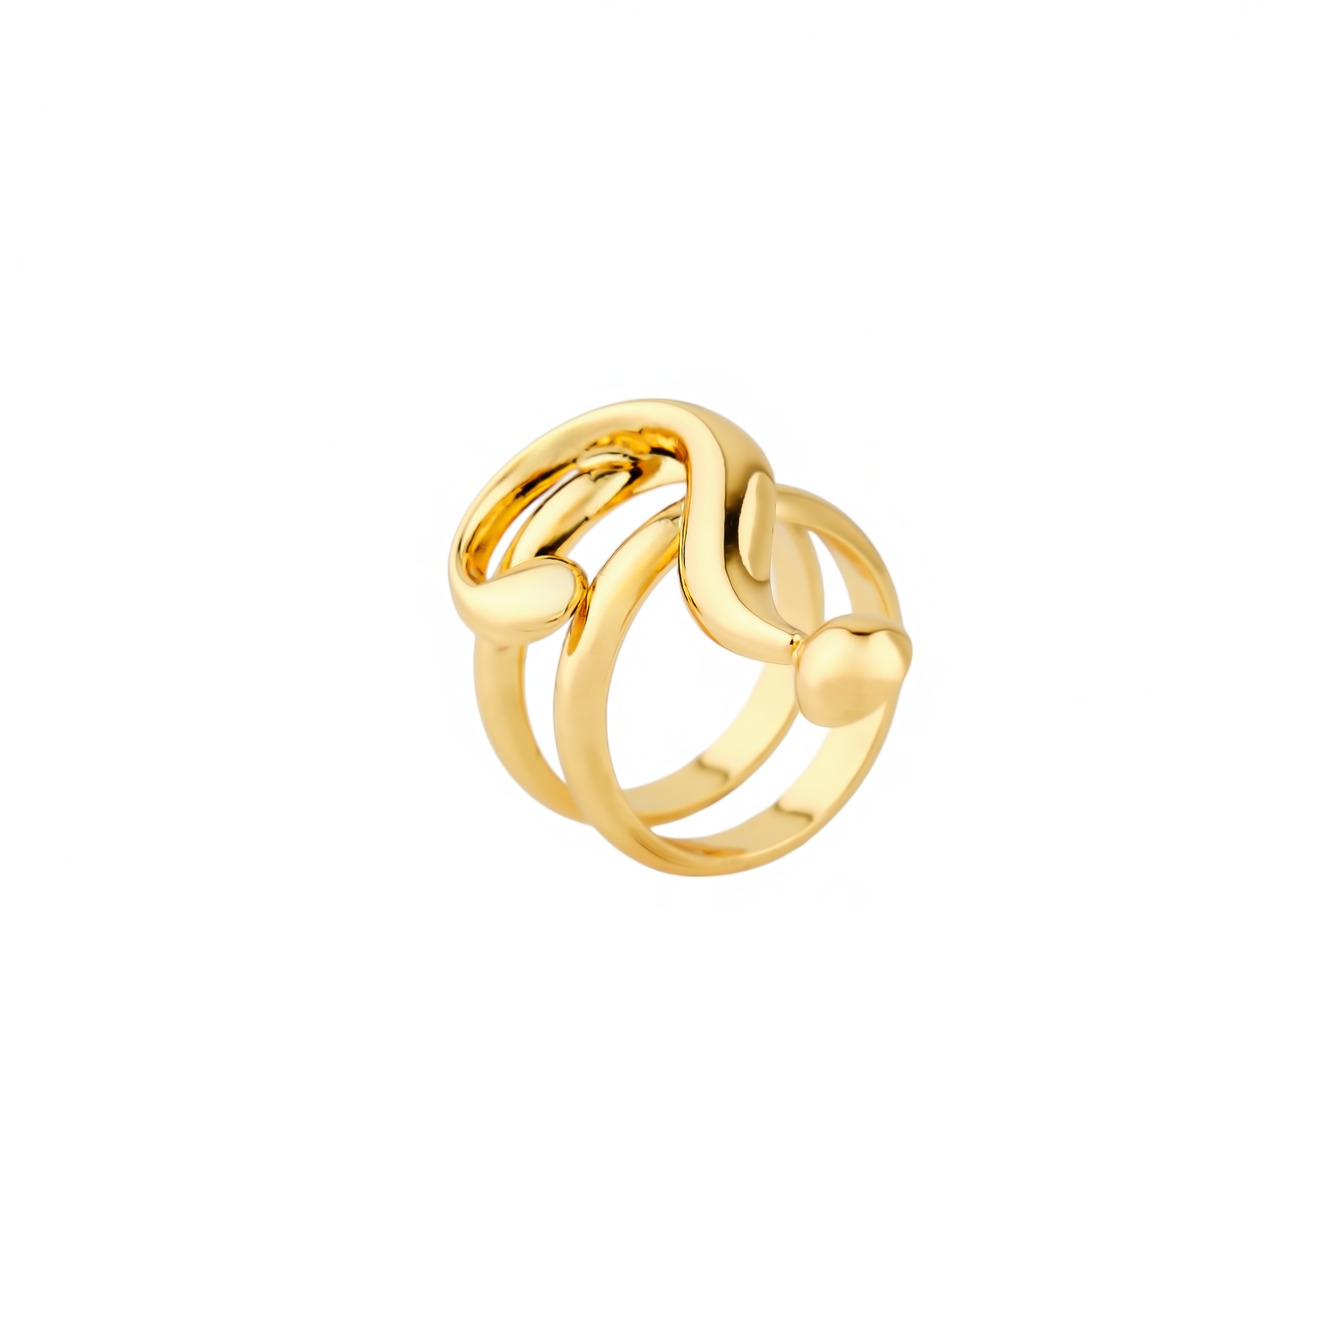 Moschino Двойное позолоченное кольцо с вопросительным знаком цена и фото